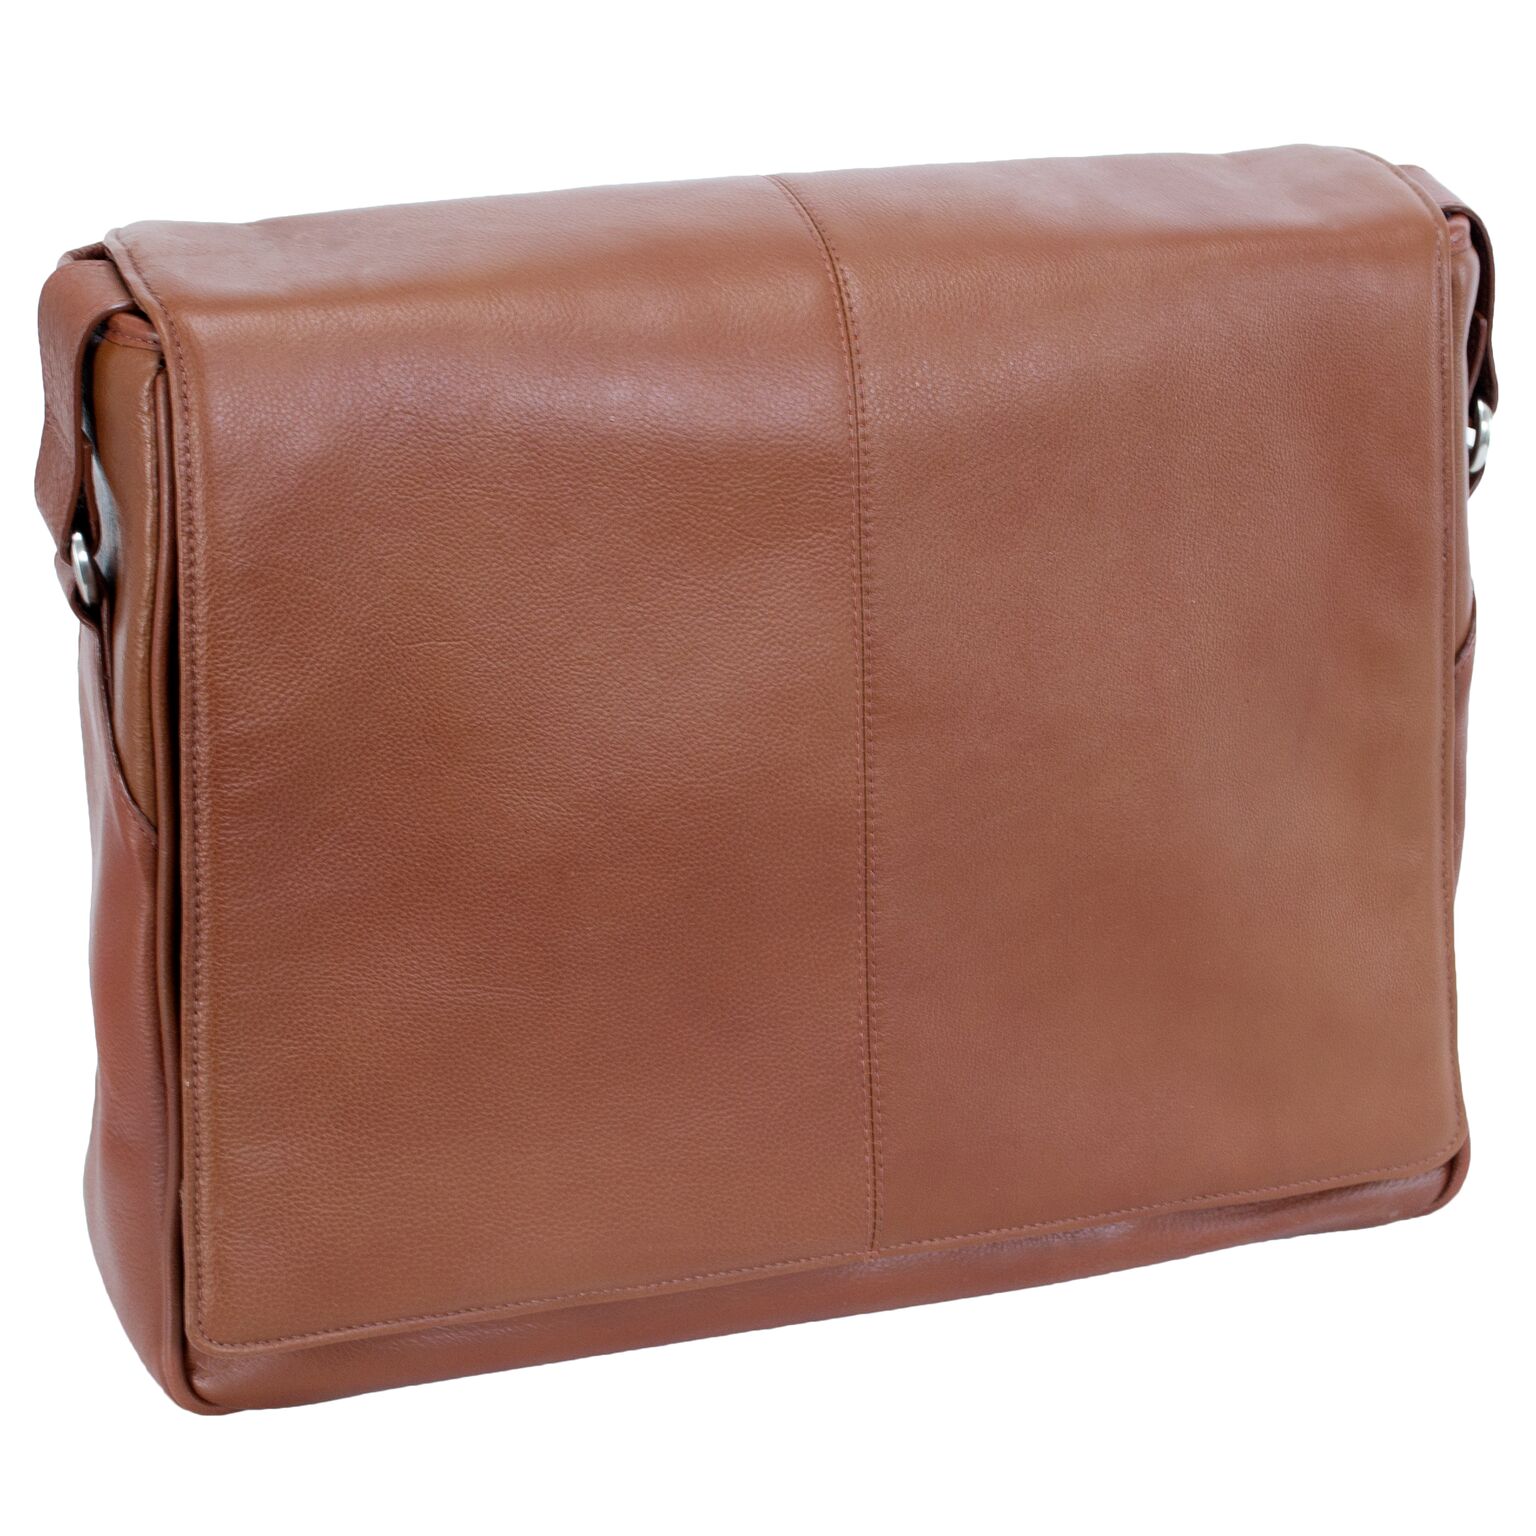 45354 San Francesco Cognac Leather Messenger Bag